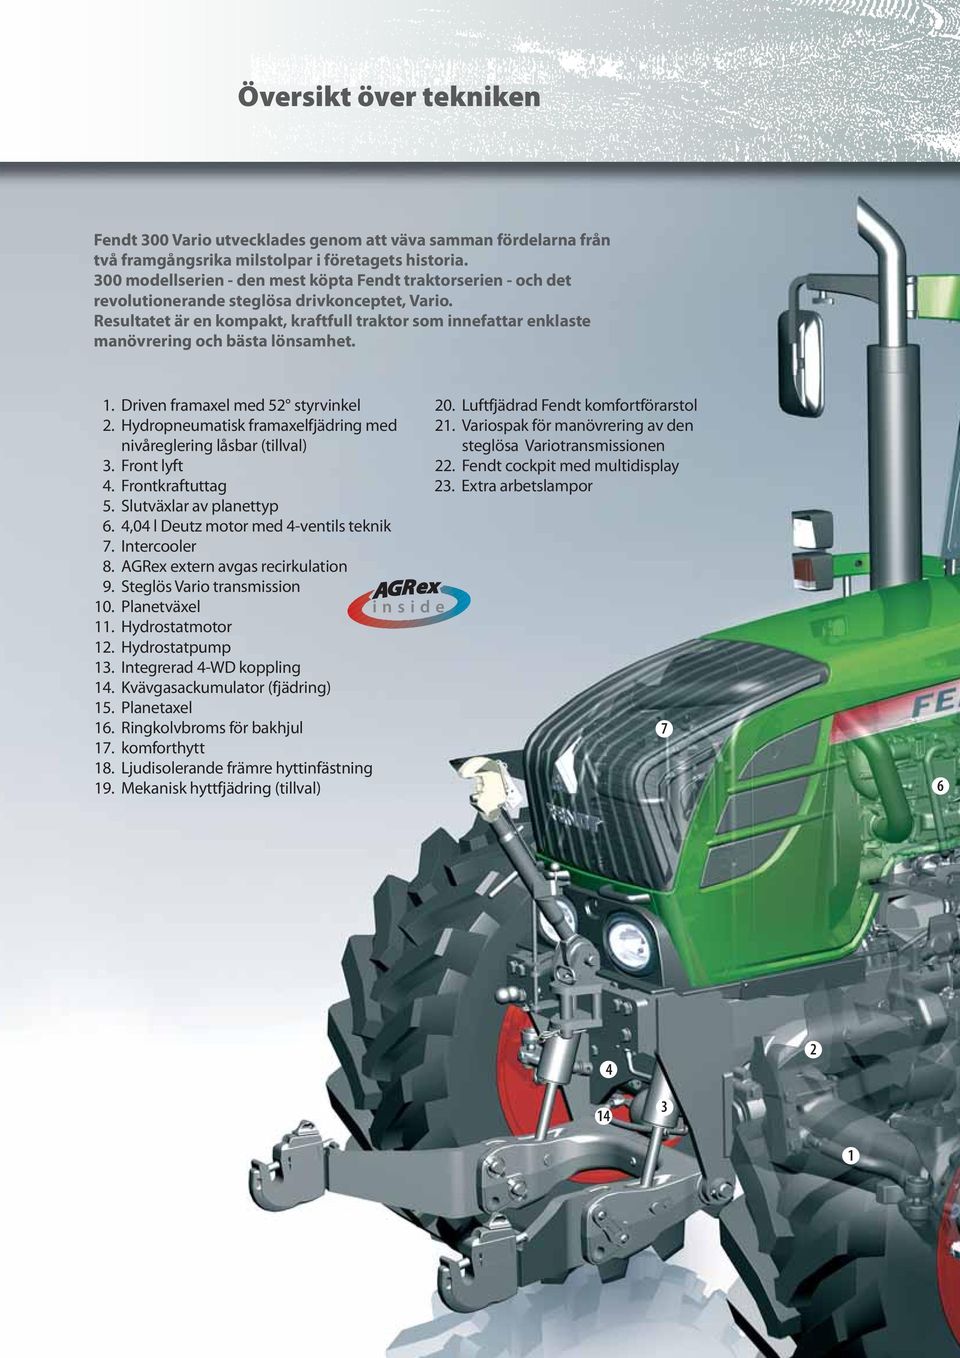 Resultatet är en kompakt, kraftfull traktor som innefattar enklaste manövrering och bästa lönsamhet. 1. Driven framaxel med 52 styrvinkel 2.